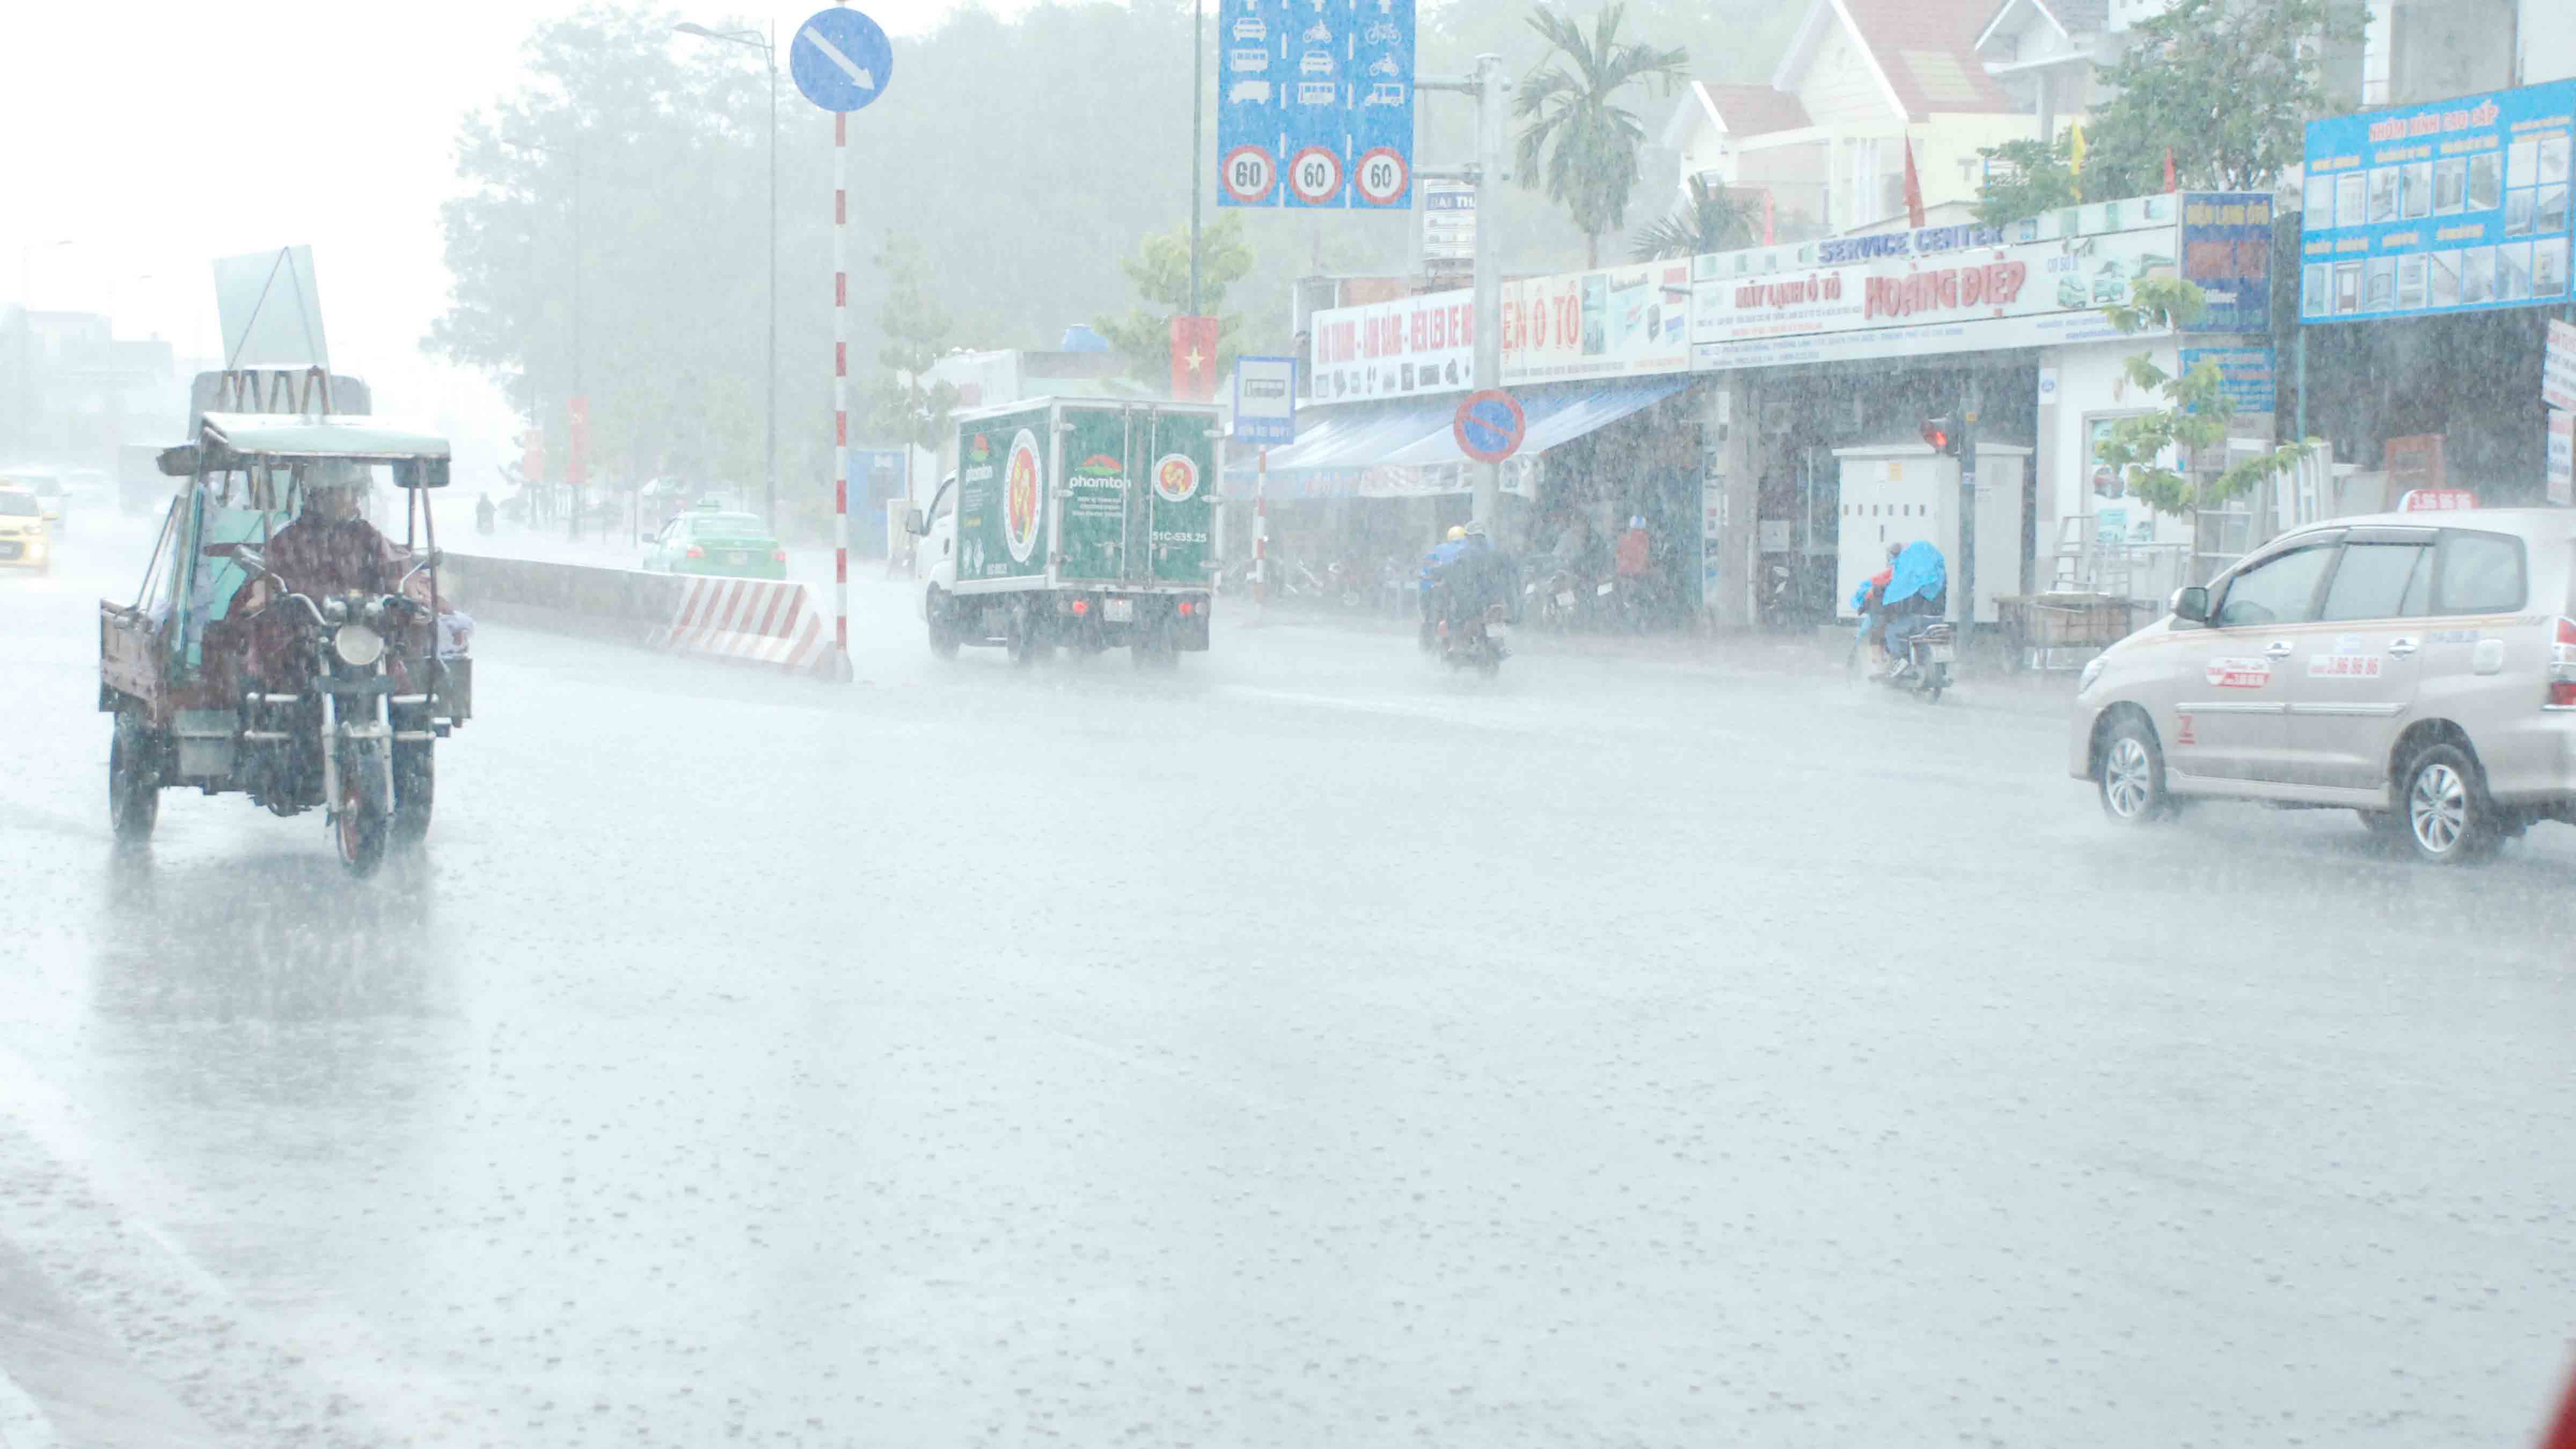 Lúc 14 giờ 30 mưa lớn bắt đầu đổ xuống khu vực quận Thủ Đức - Ảnh: An  Huy